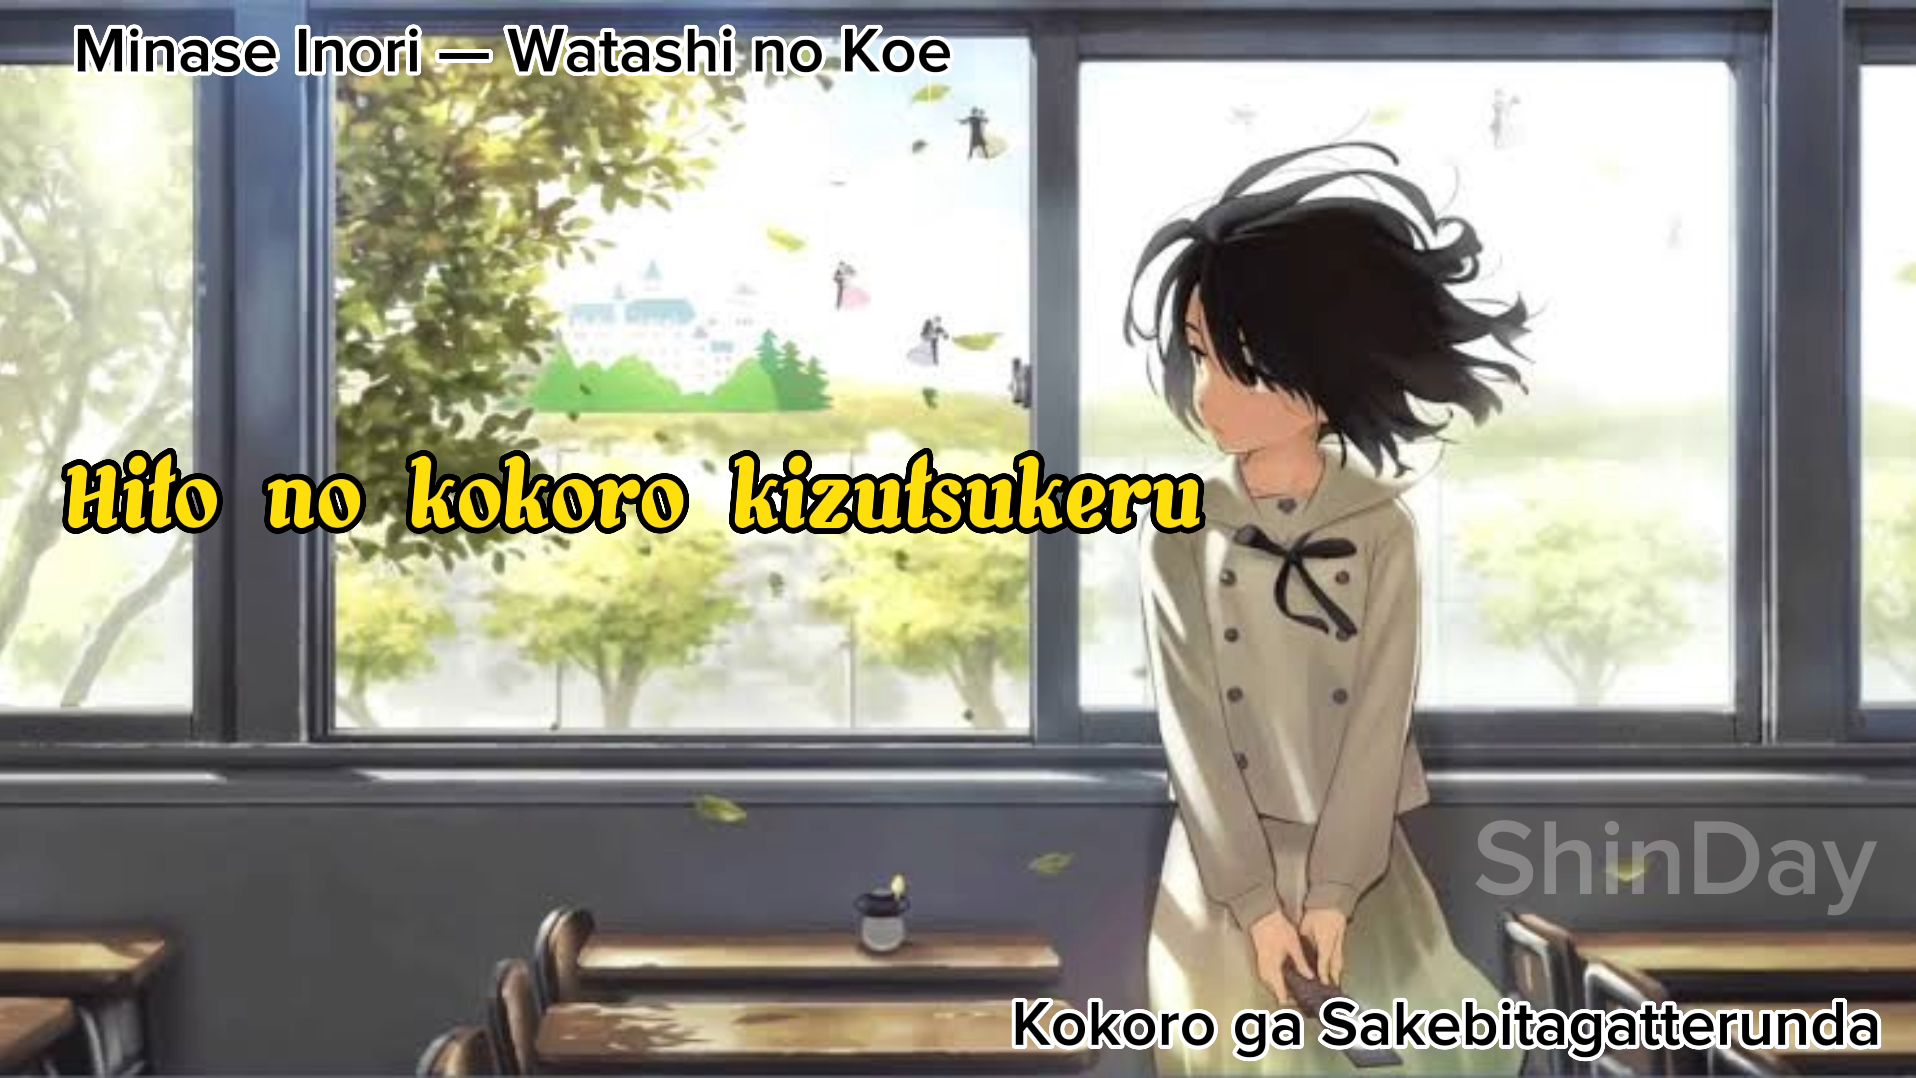 Watashi no koe - Kokoro ga Sakebitagatterunda (Minase Inori) Cover